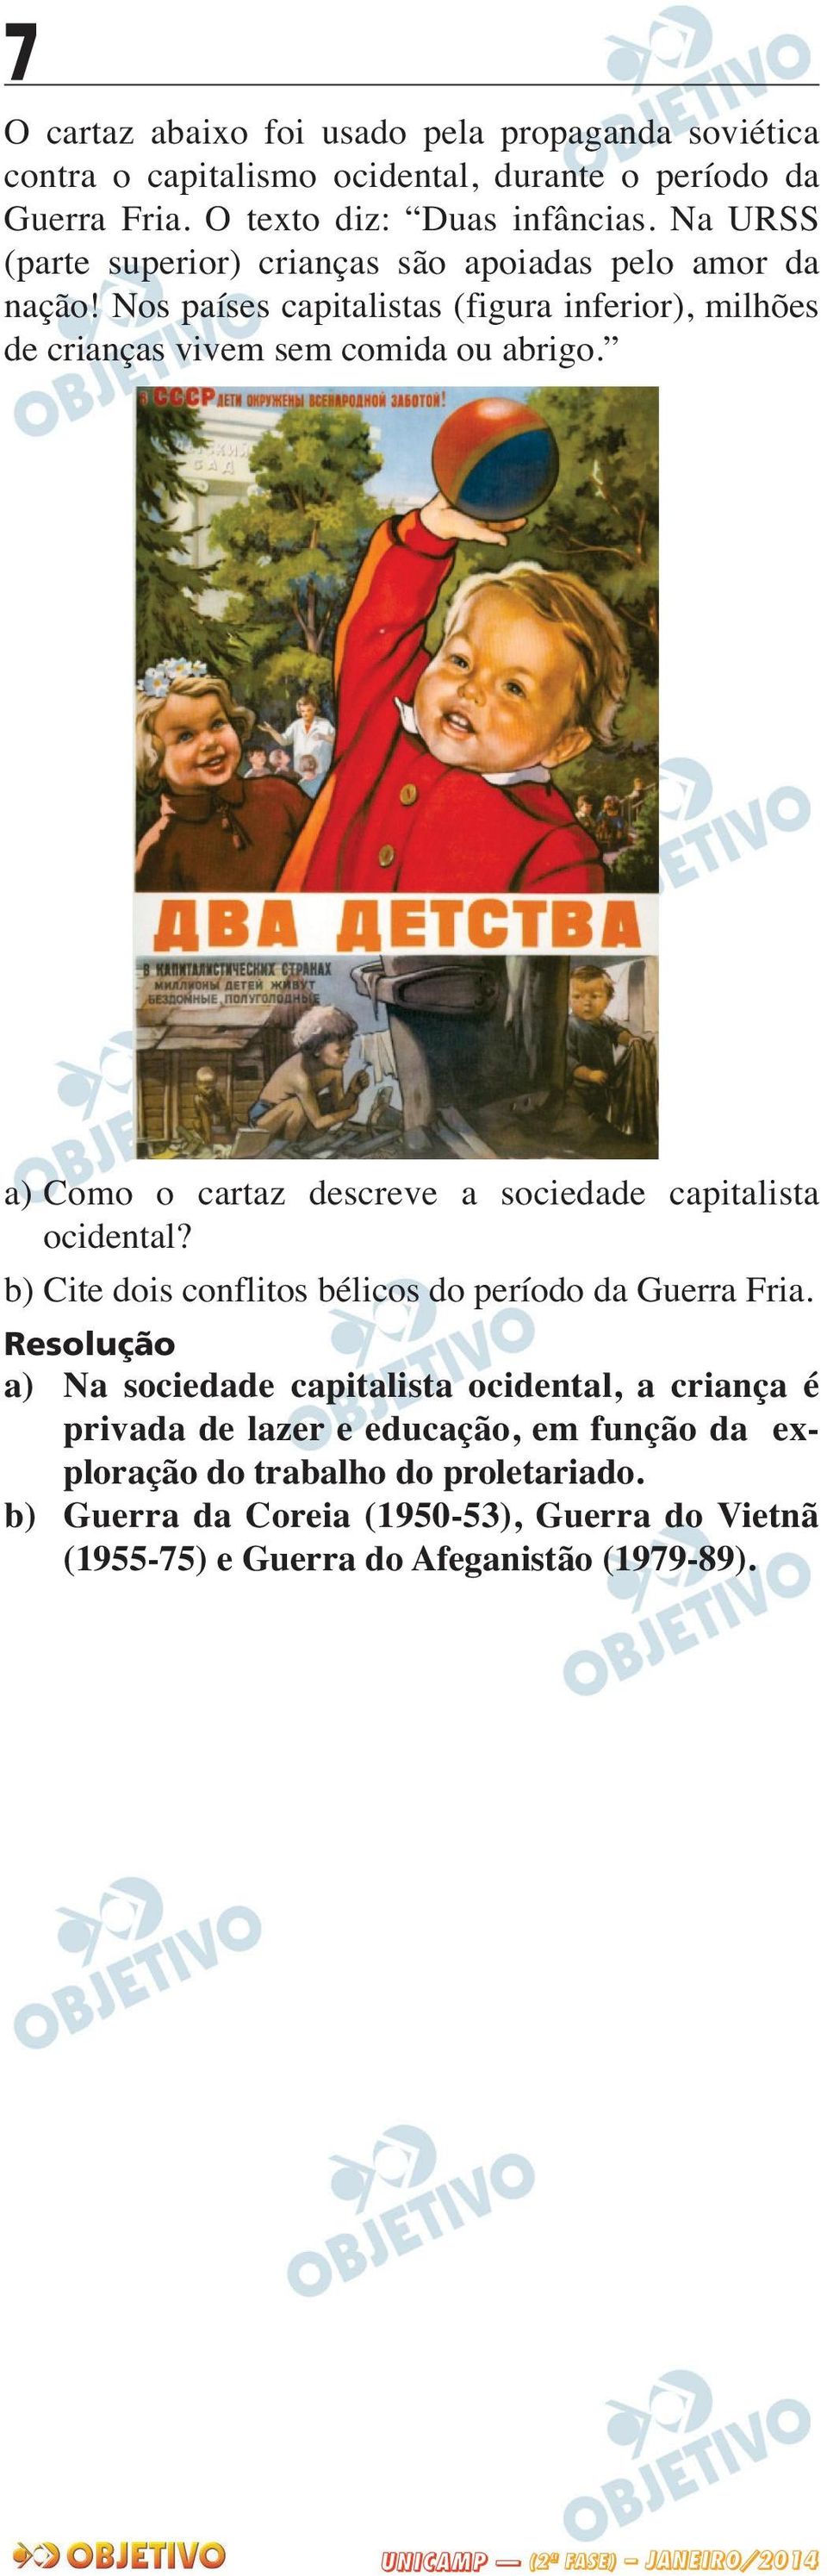 a) Como o cartaz descreve a sociedade capitalista ocidental? b) Cite dois conflitos bélicos do período da Guerra Fria.